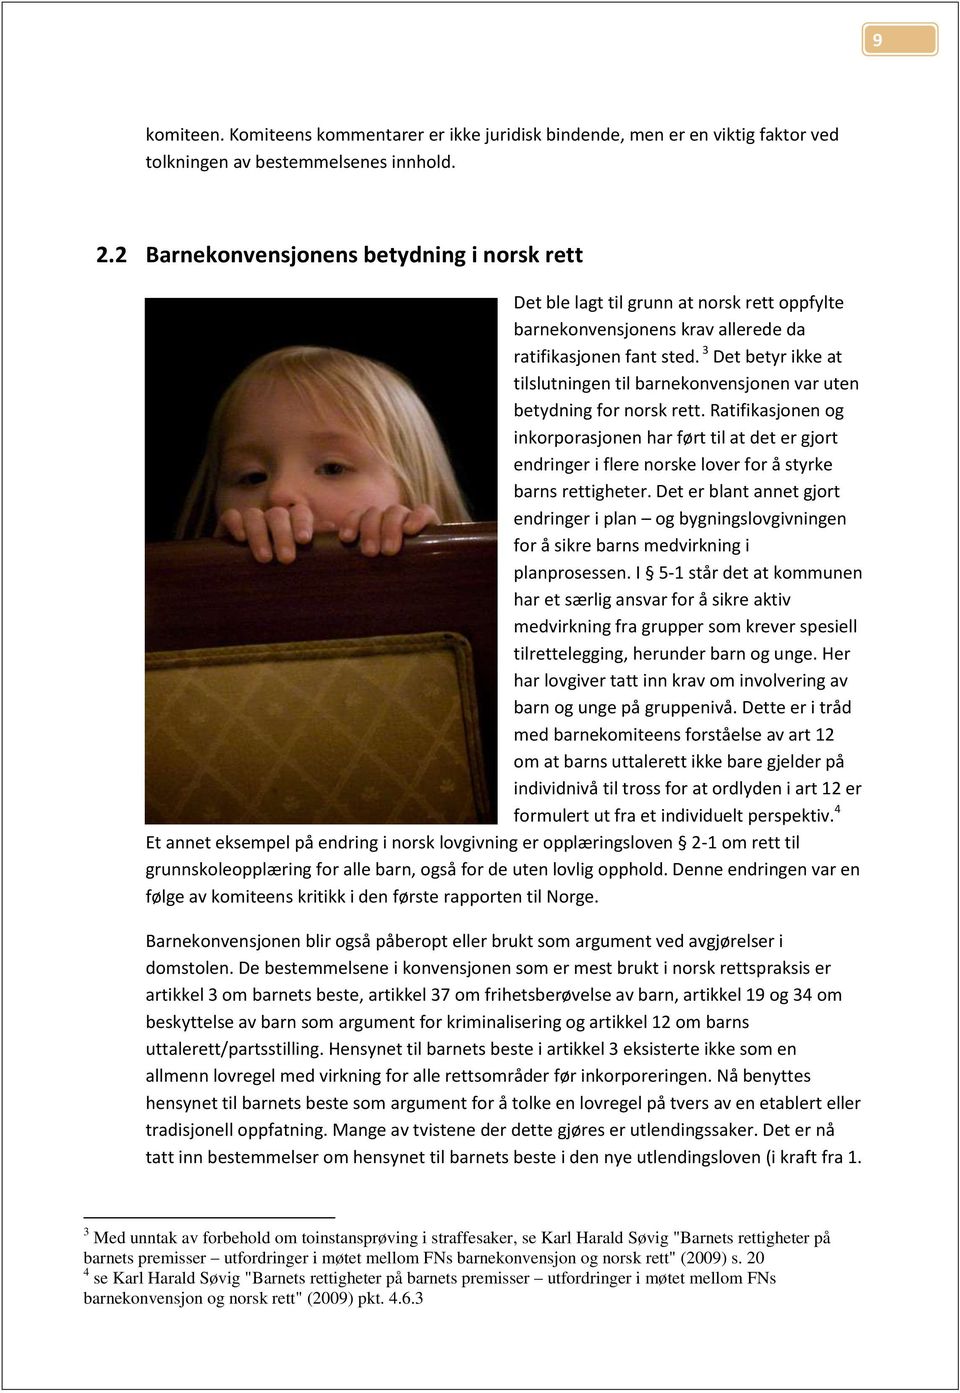 3 Det betyr ikke at tilslutningen til barnekonvensjonen var uten betydning for norsk rett.